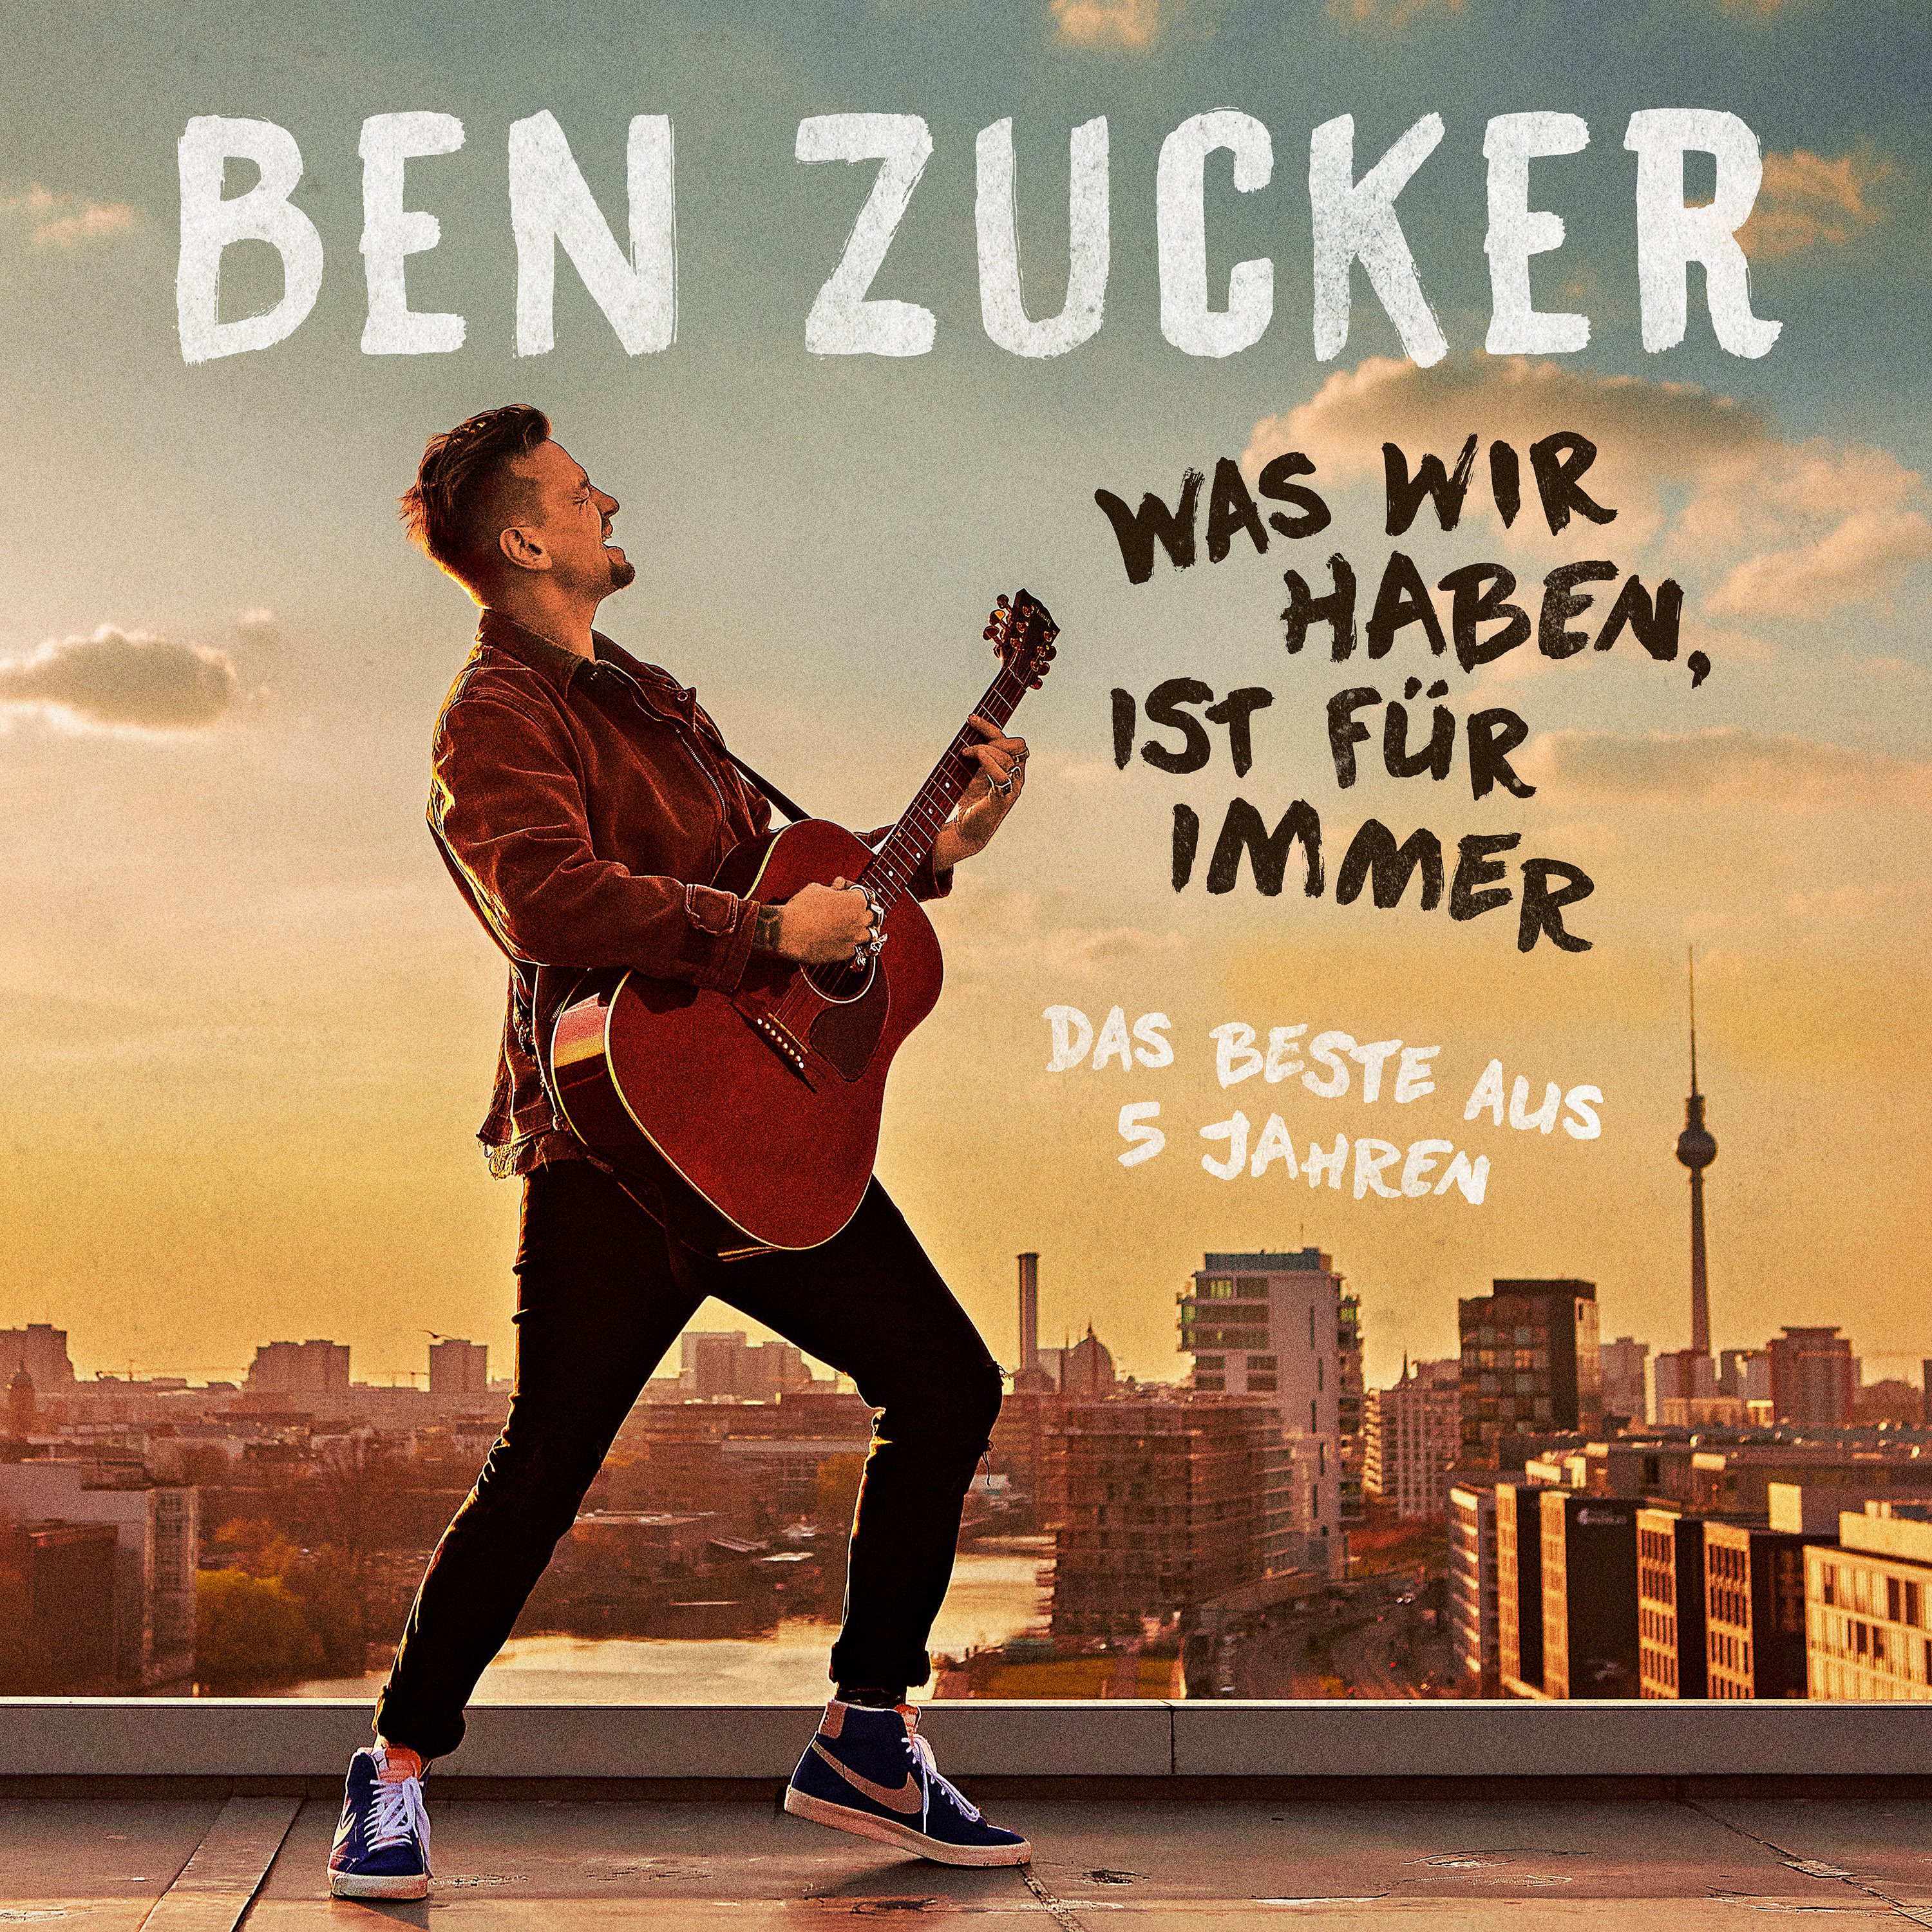 Was Wir (Ltd.Fotobuch Zucker Ed.) - Für Ben Immer (CD) - Haben,Ist